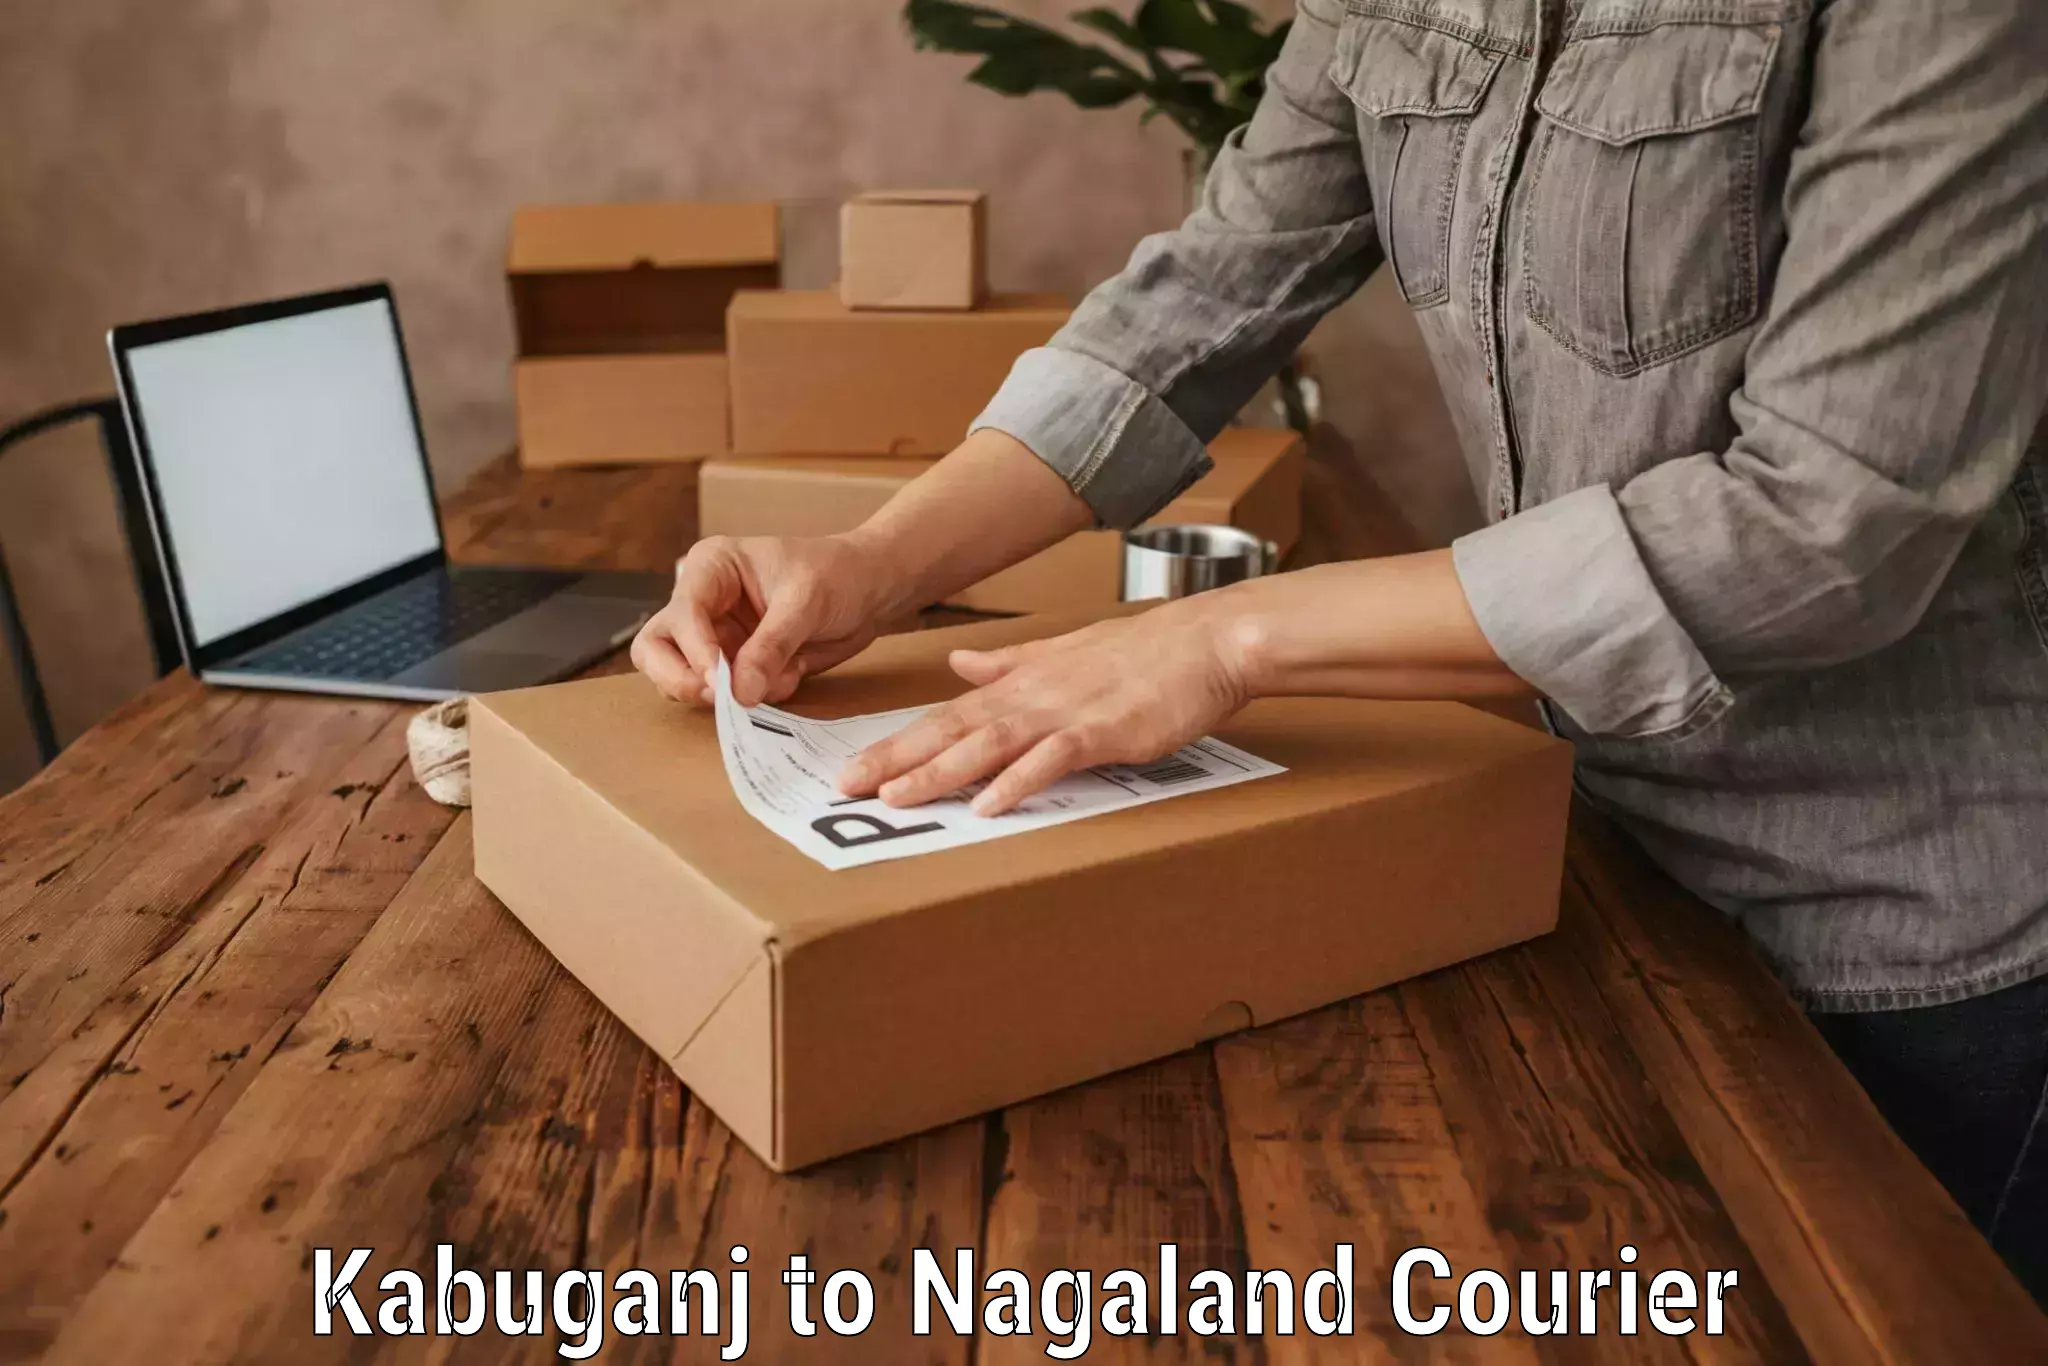 Urgent luggage shipment Kabuganj to Nagaland